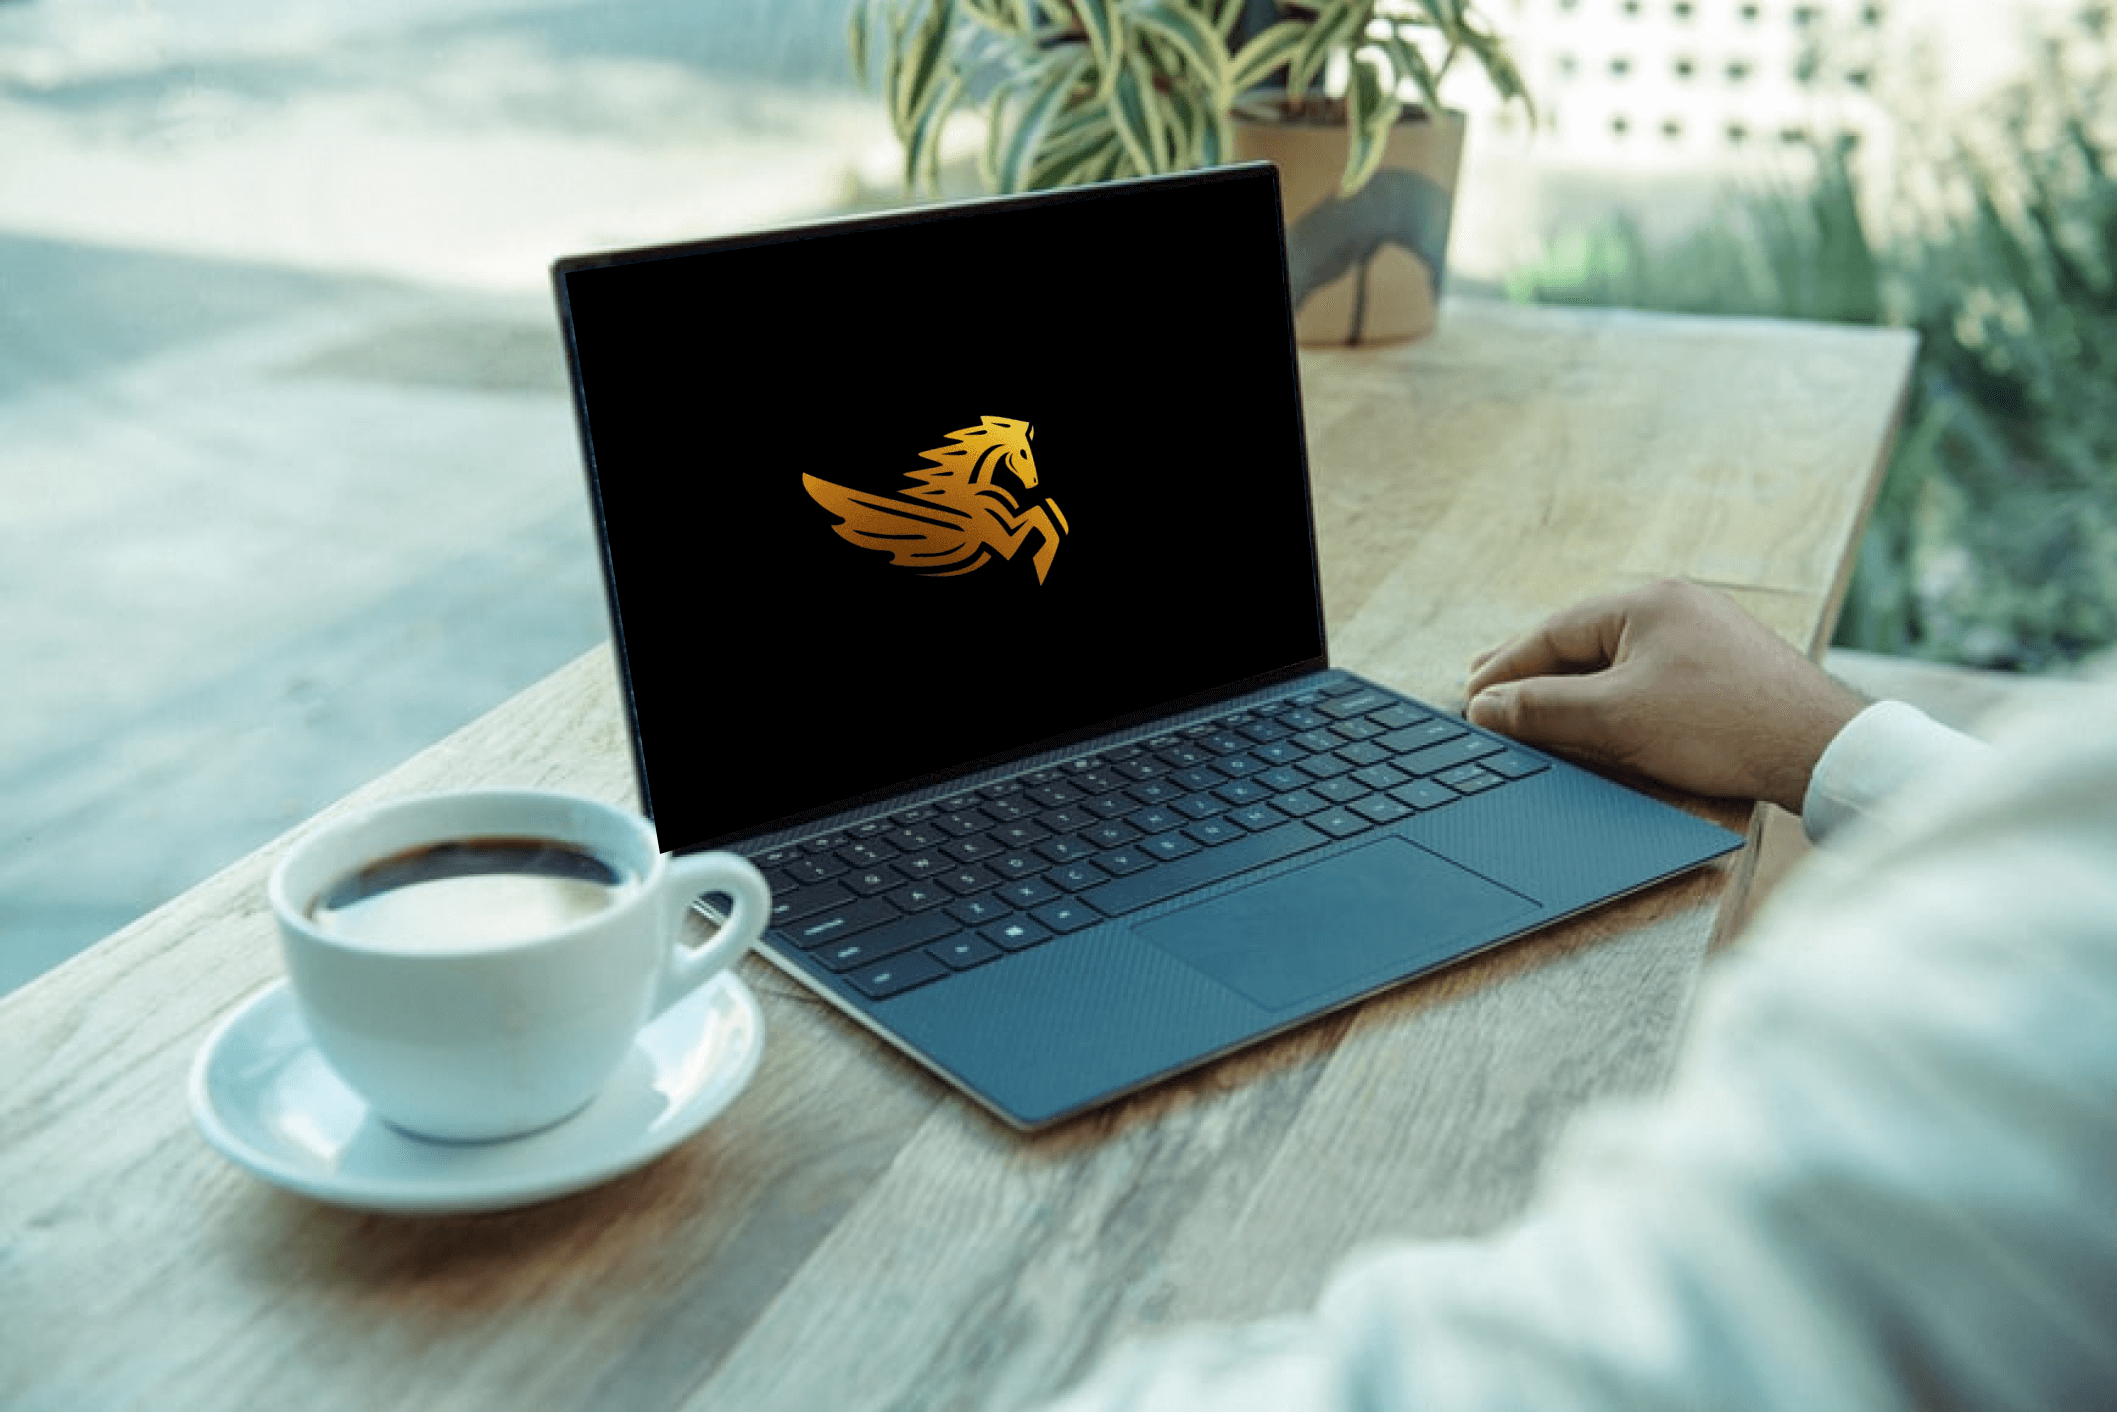 Pegasus concept design on laptop.